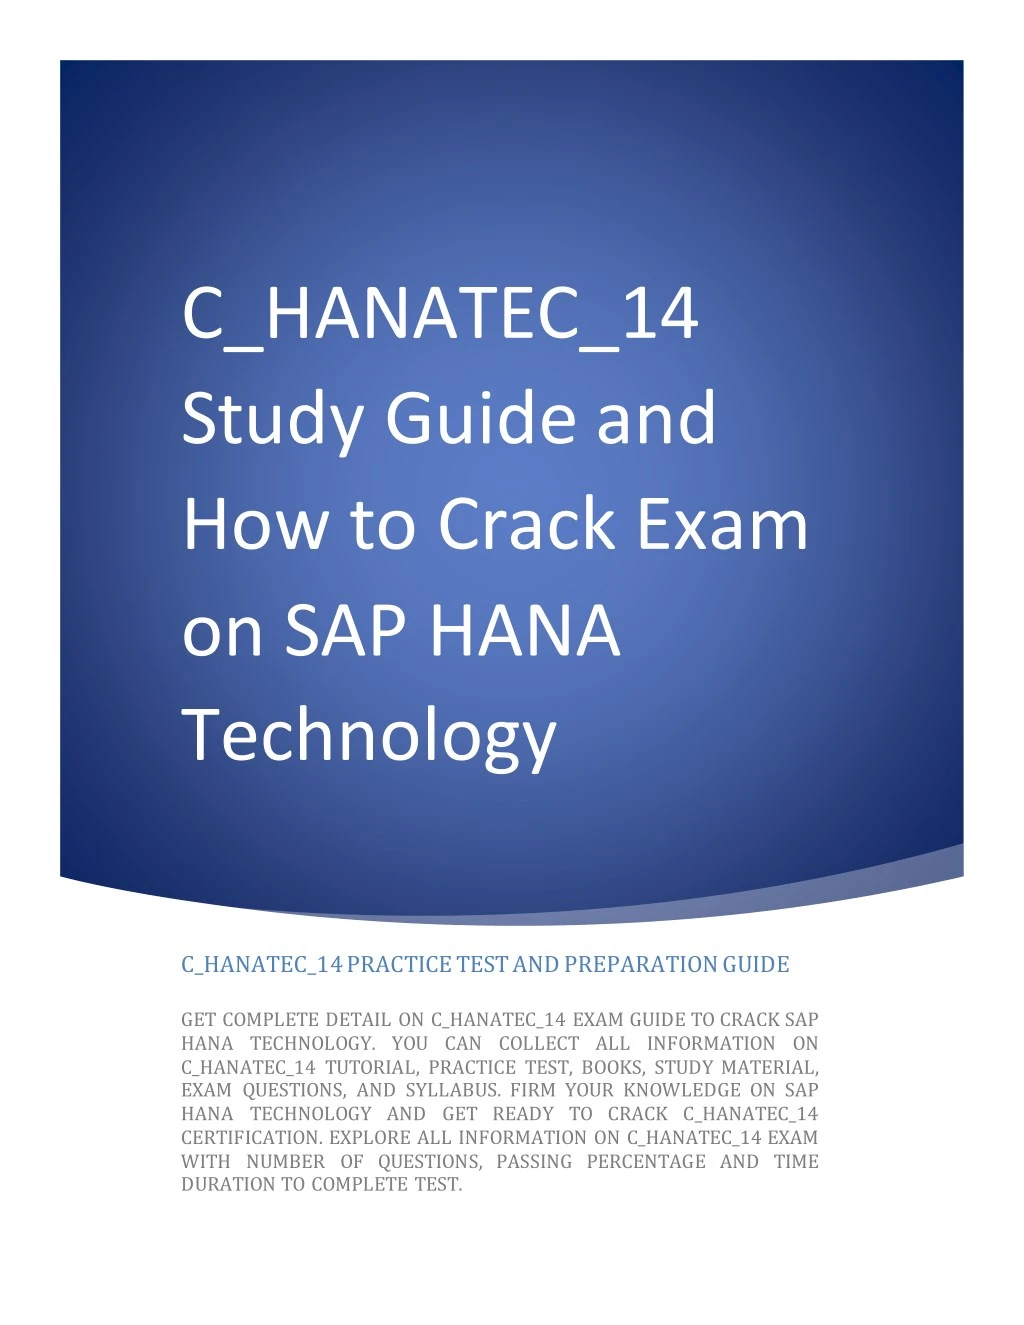 c hanatec 14 study guide and how to crack exam